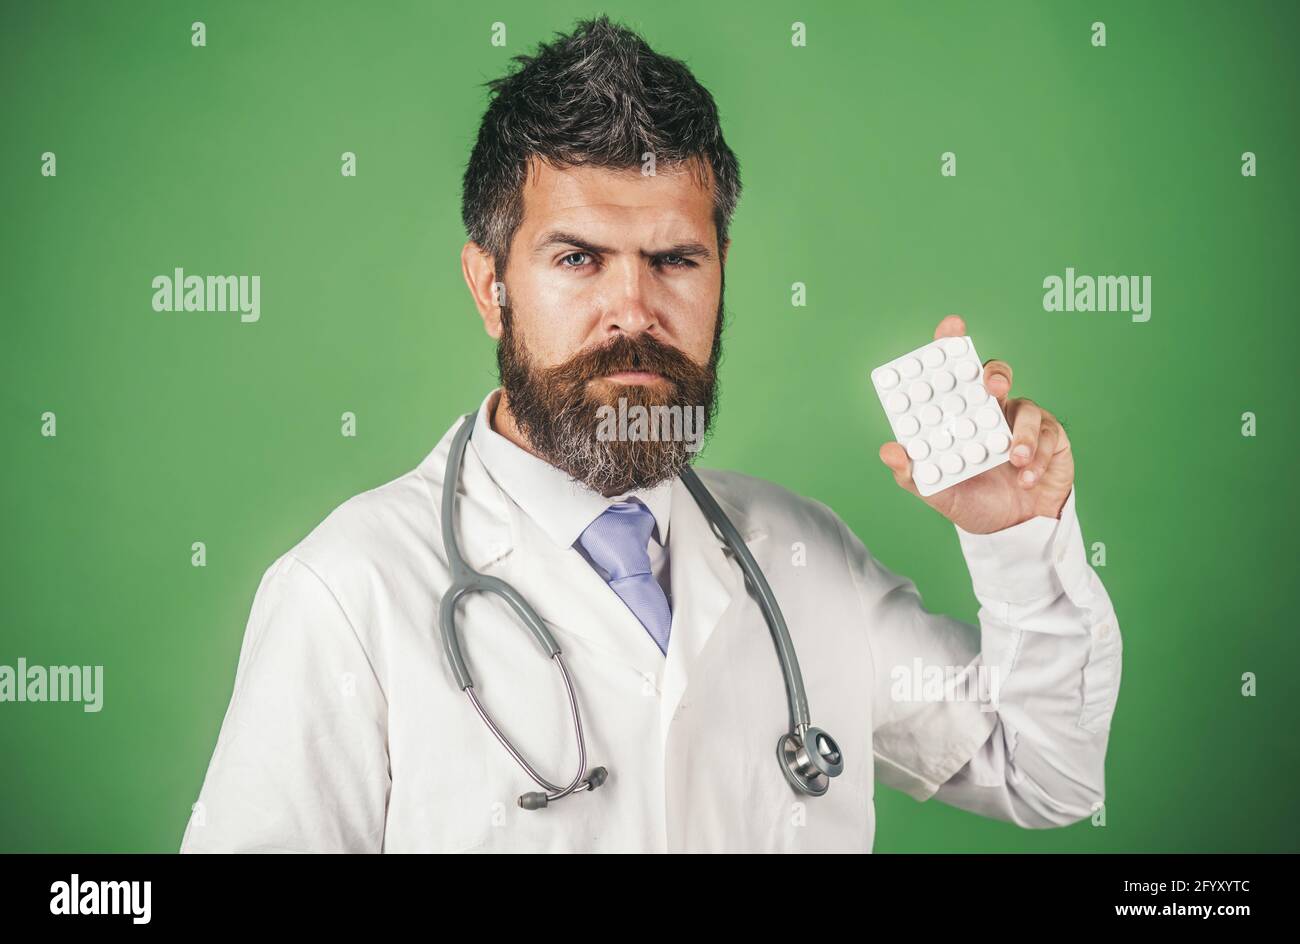 Medico serio in abito medico bianco con stetoscopio tiene le pillole in mano. Concetto di farmacia, medicina e assistenza sanitaria. Foto Stock